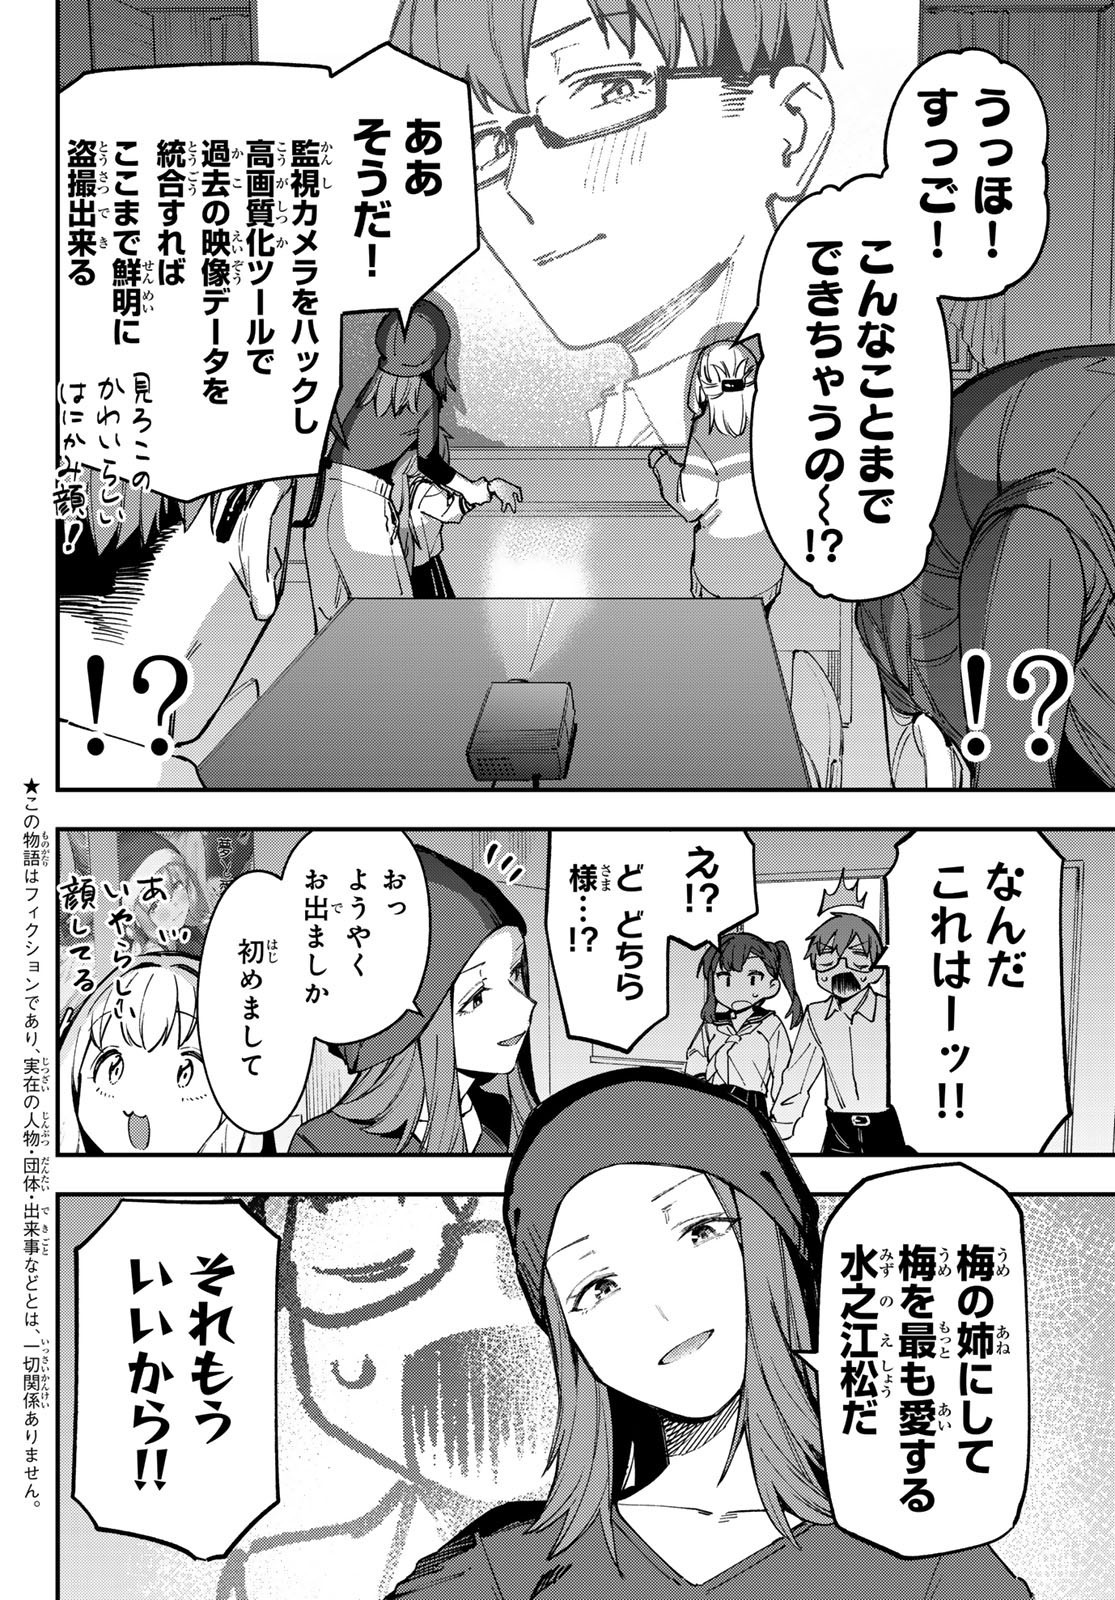 Seitokai ni mo Ana wa Aru! - Chapter 075 - Page 2